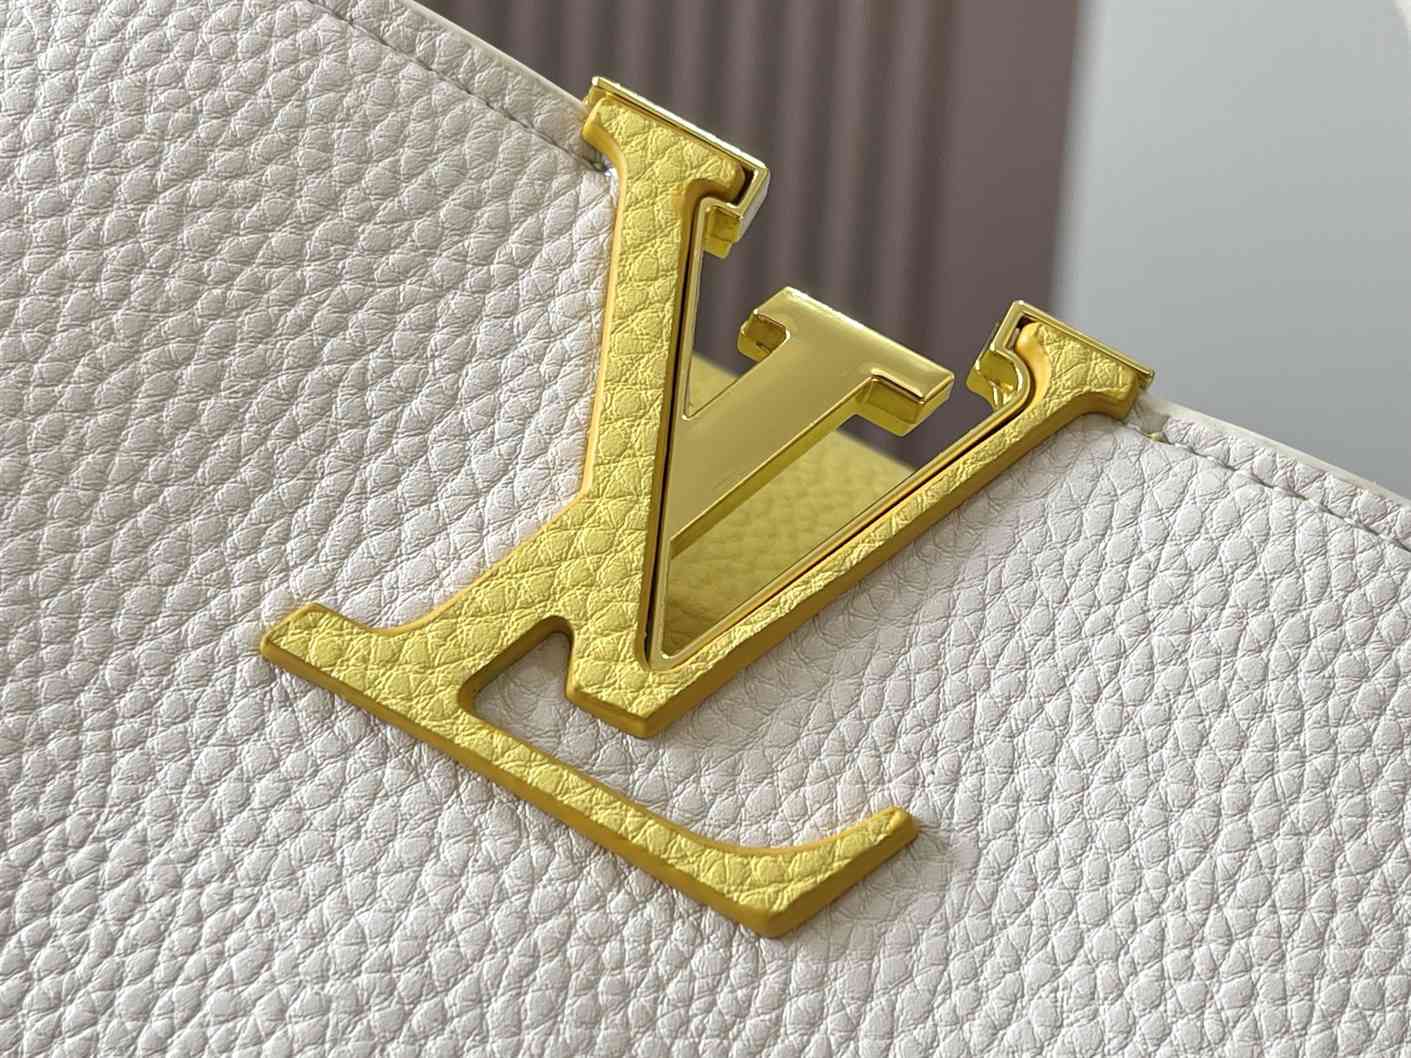 Louis Vuitton CAPUCINES MM replica